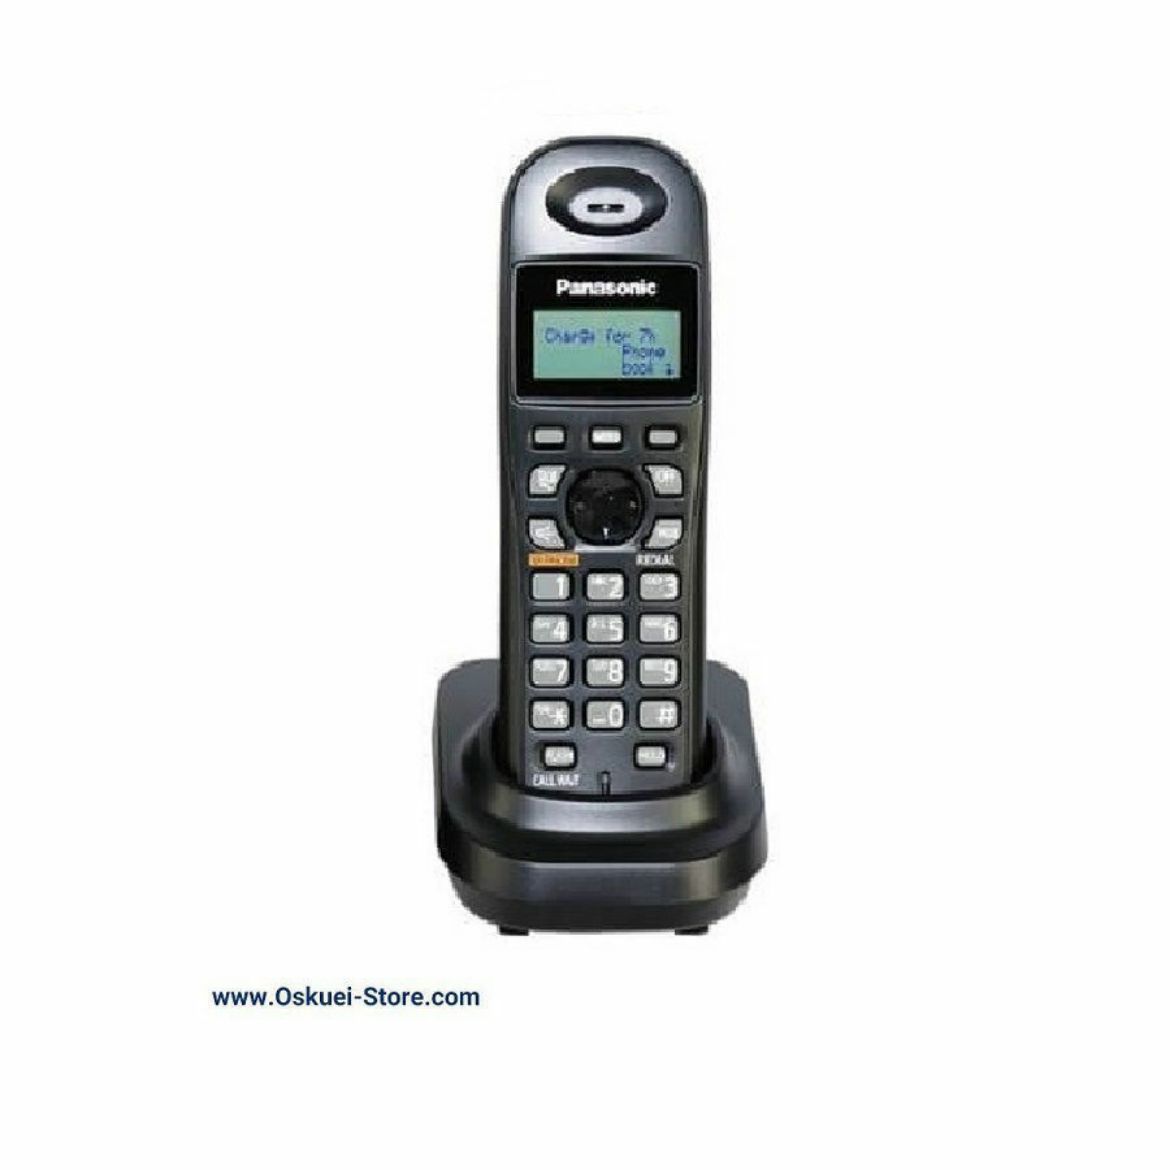 Panasonic KX-TGA361 Cordless Telephone Black Front